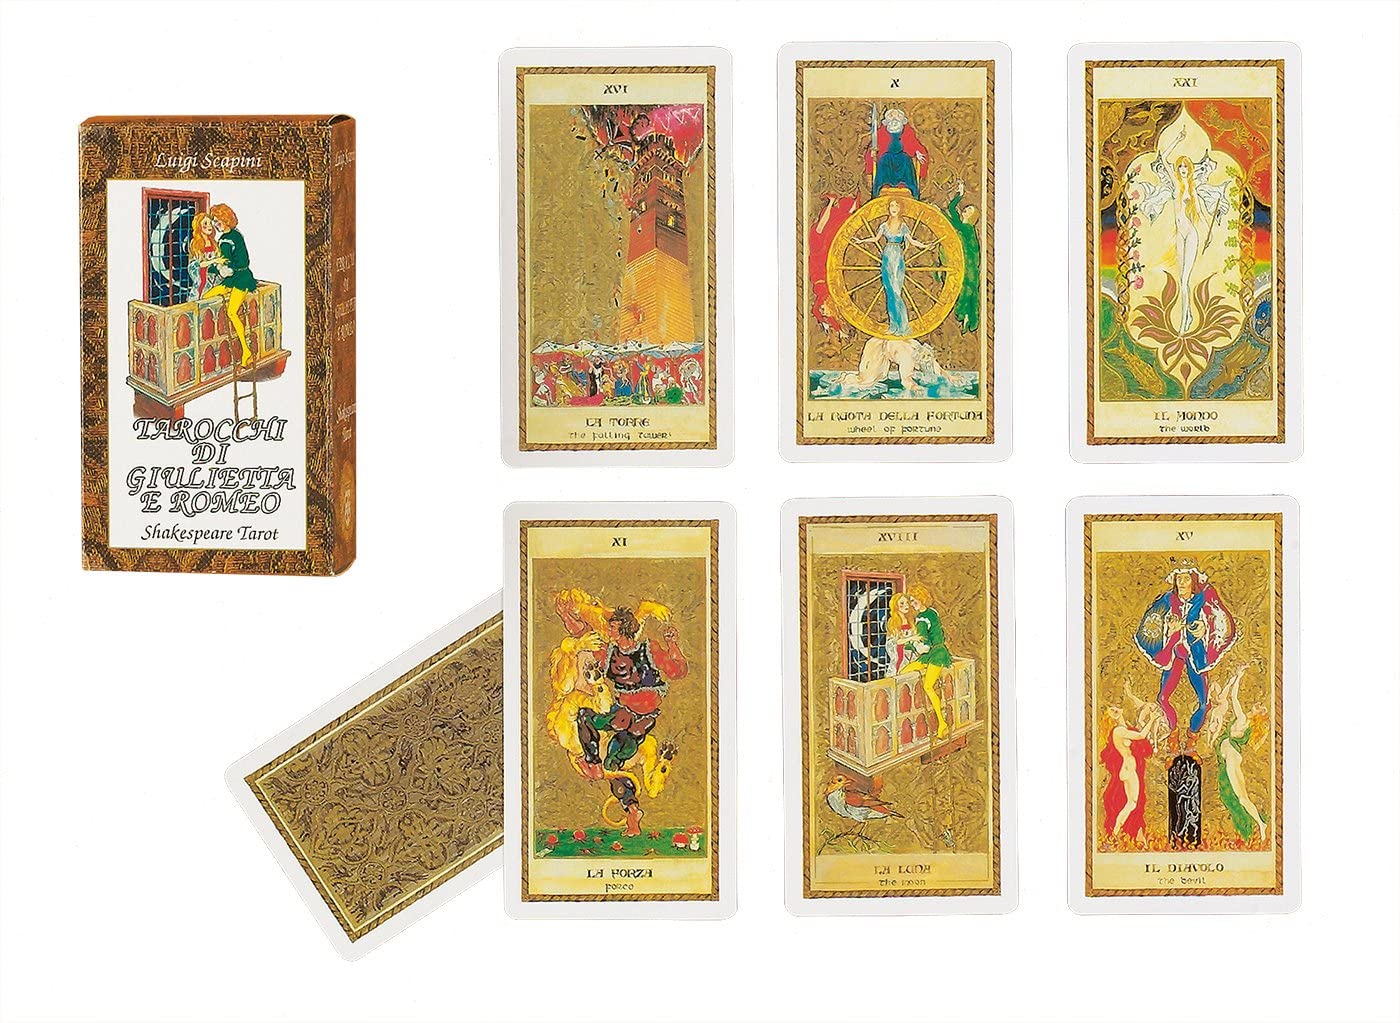 Yellow Le Tarot de Marseille Cards by Dal Negro